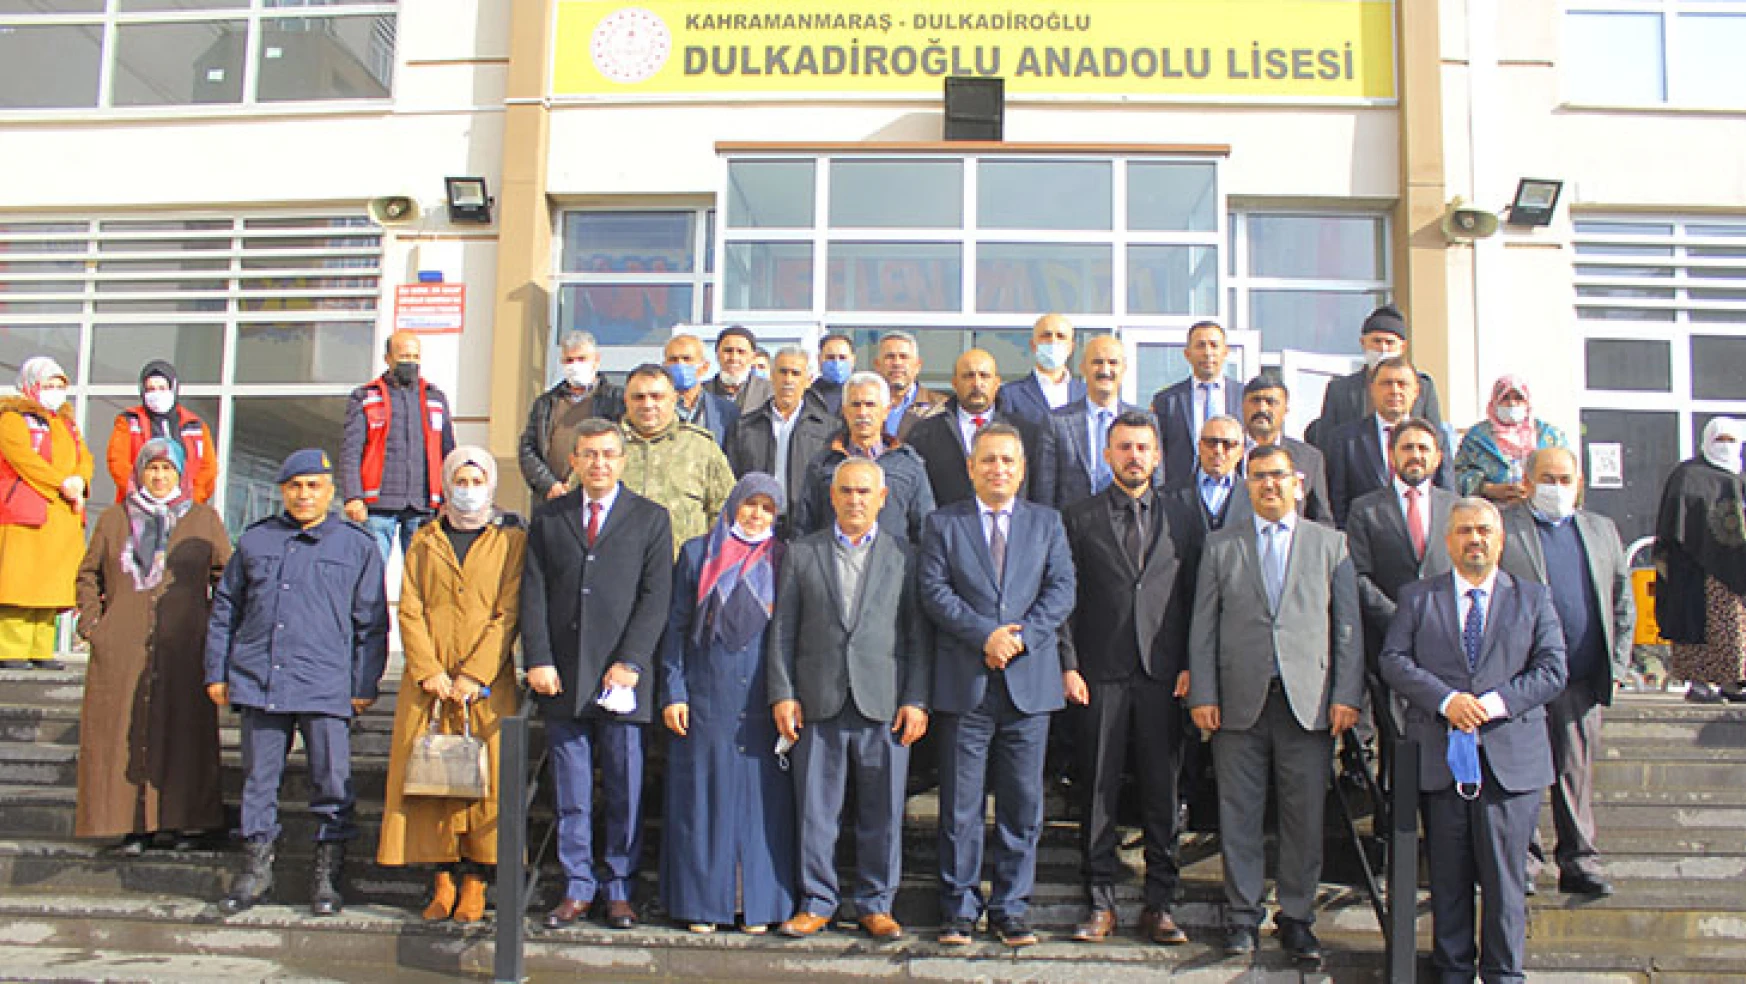 Şehit Piyade Uzman Onbaşı Fatih Saylak konferans salonu açıldı